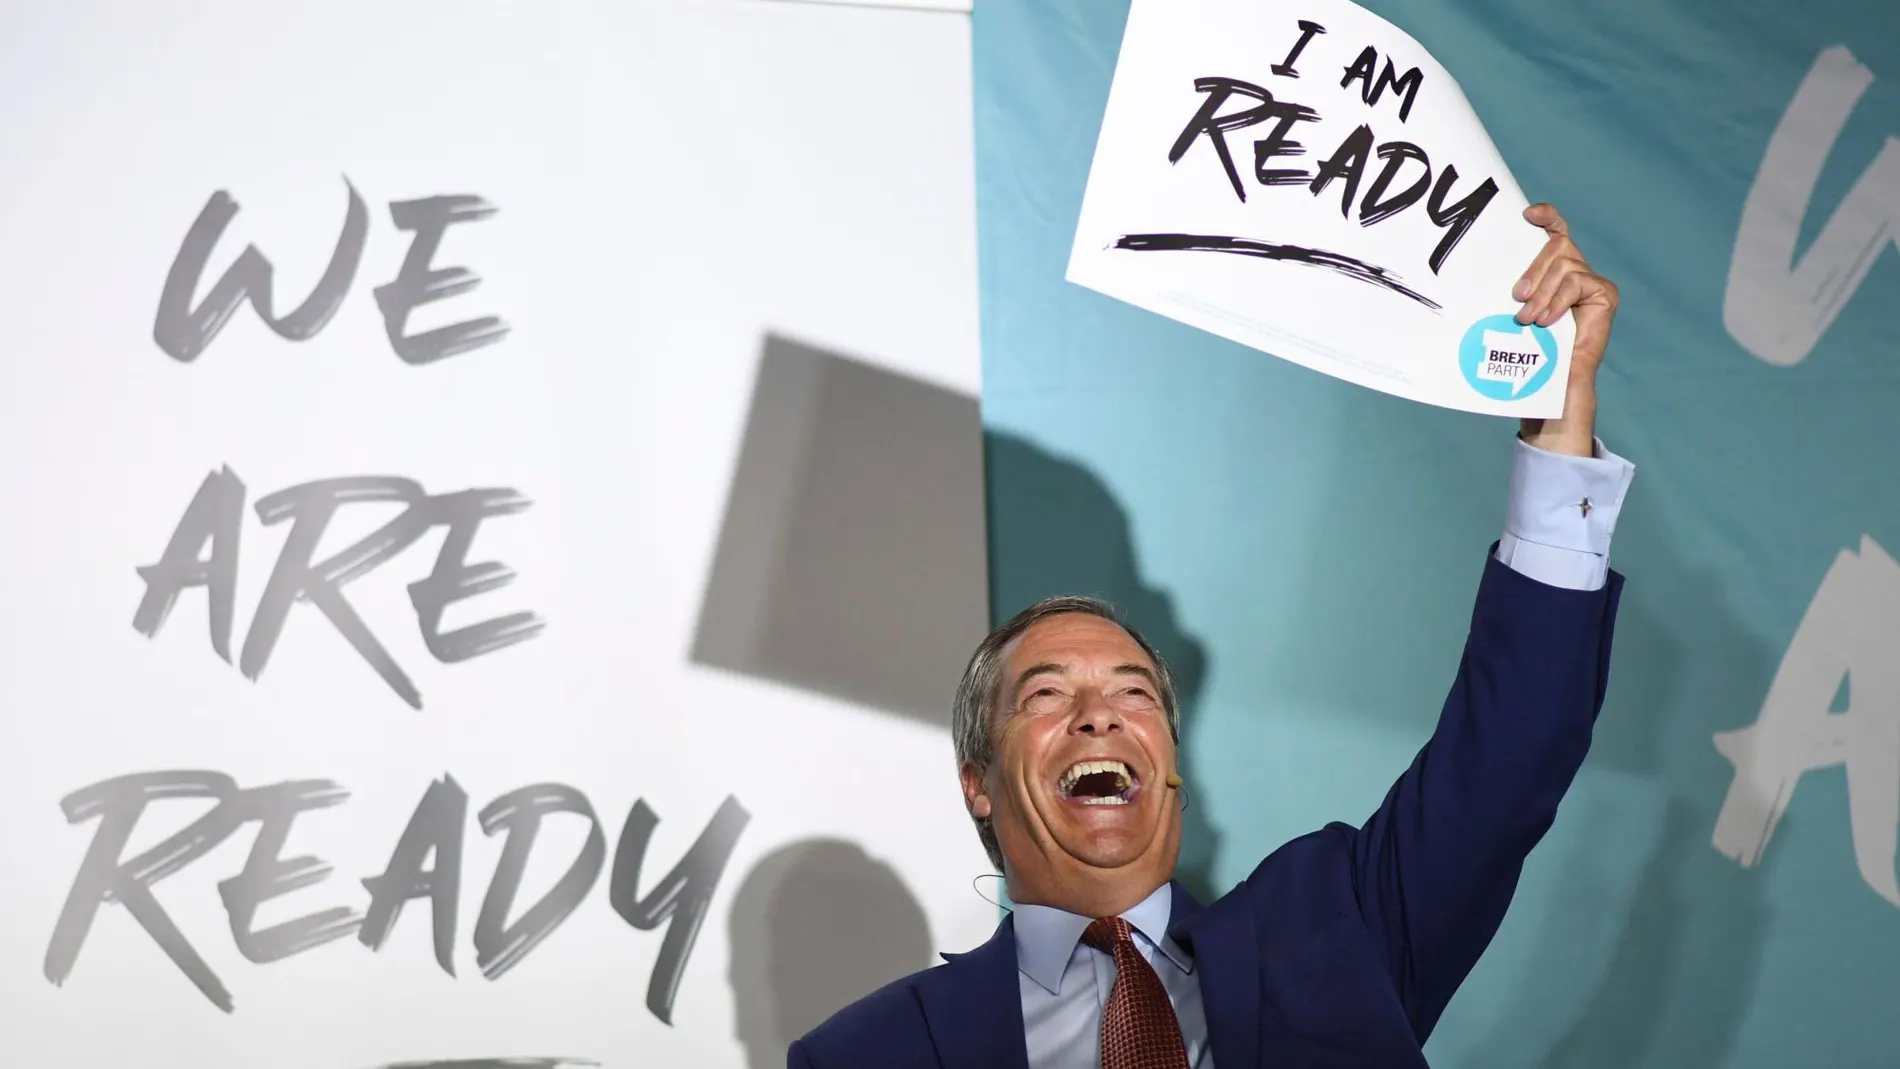 Nigel Farage en un acto de su partido en Essex con el eslogan 'We Are Ready' (Estamos preparados)/Ap